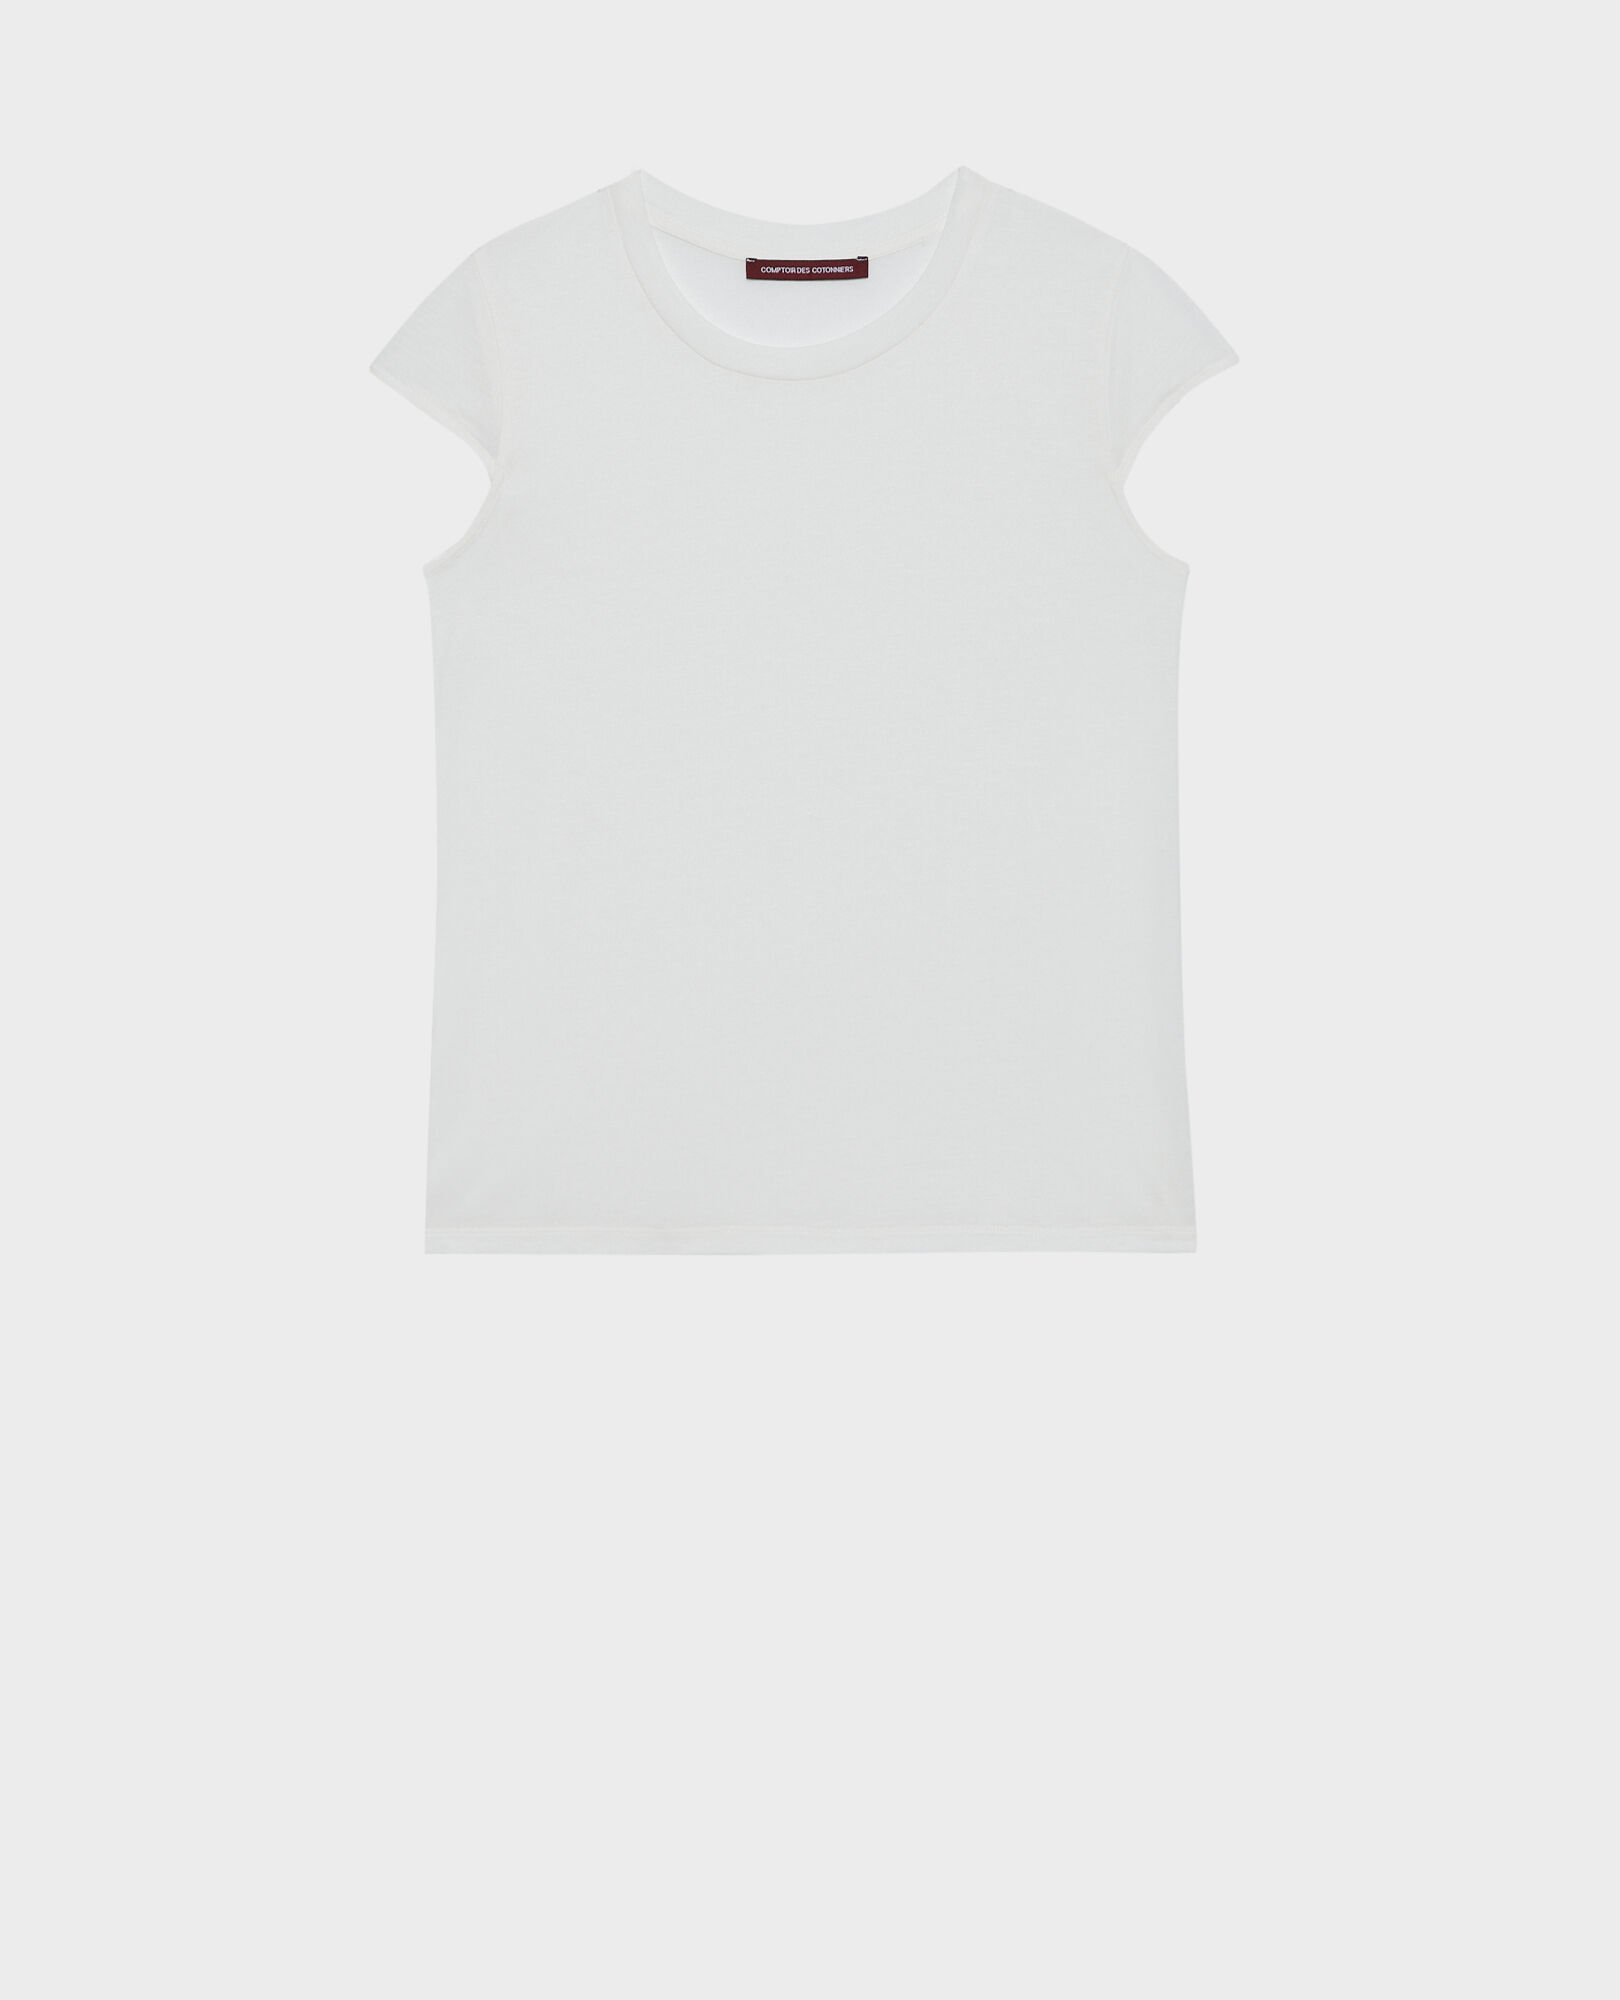 MANON - Round neck cotton blend t-shirt 06 gray 2ste068c14